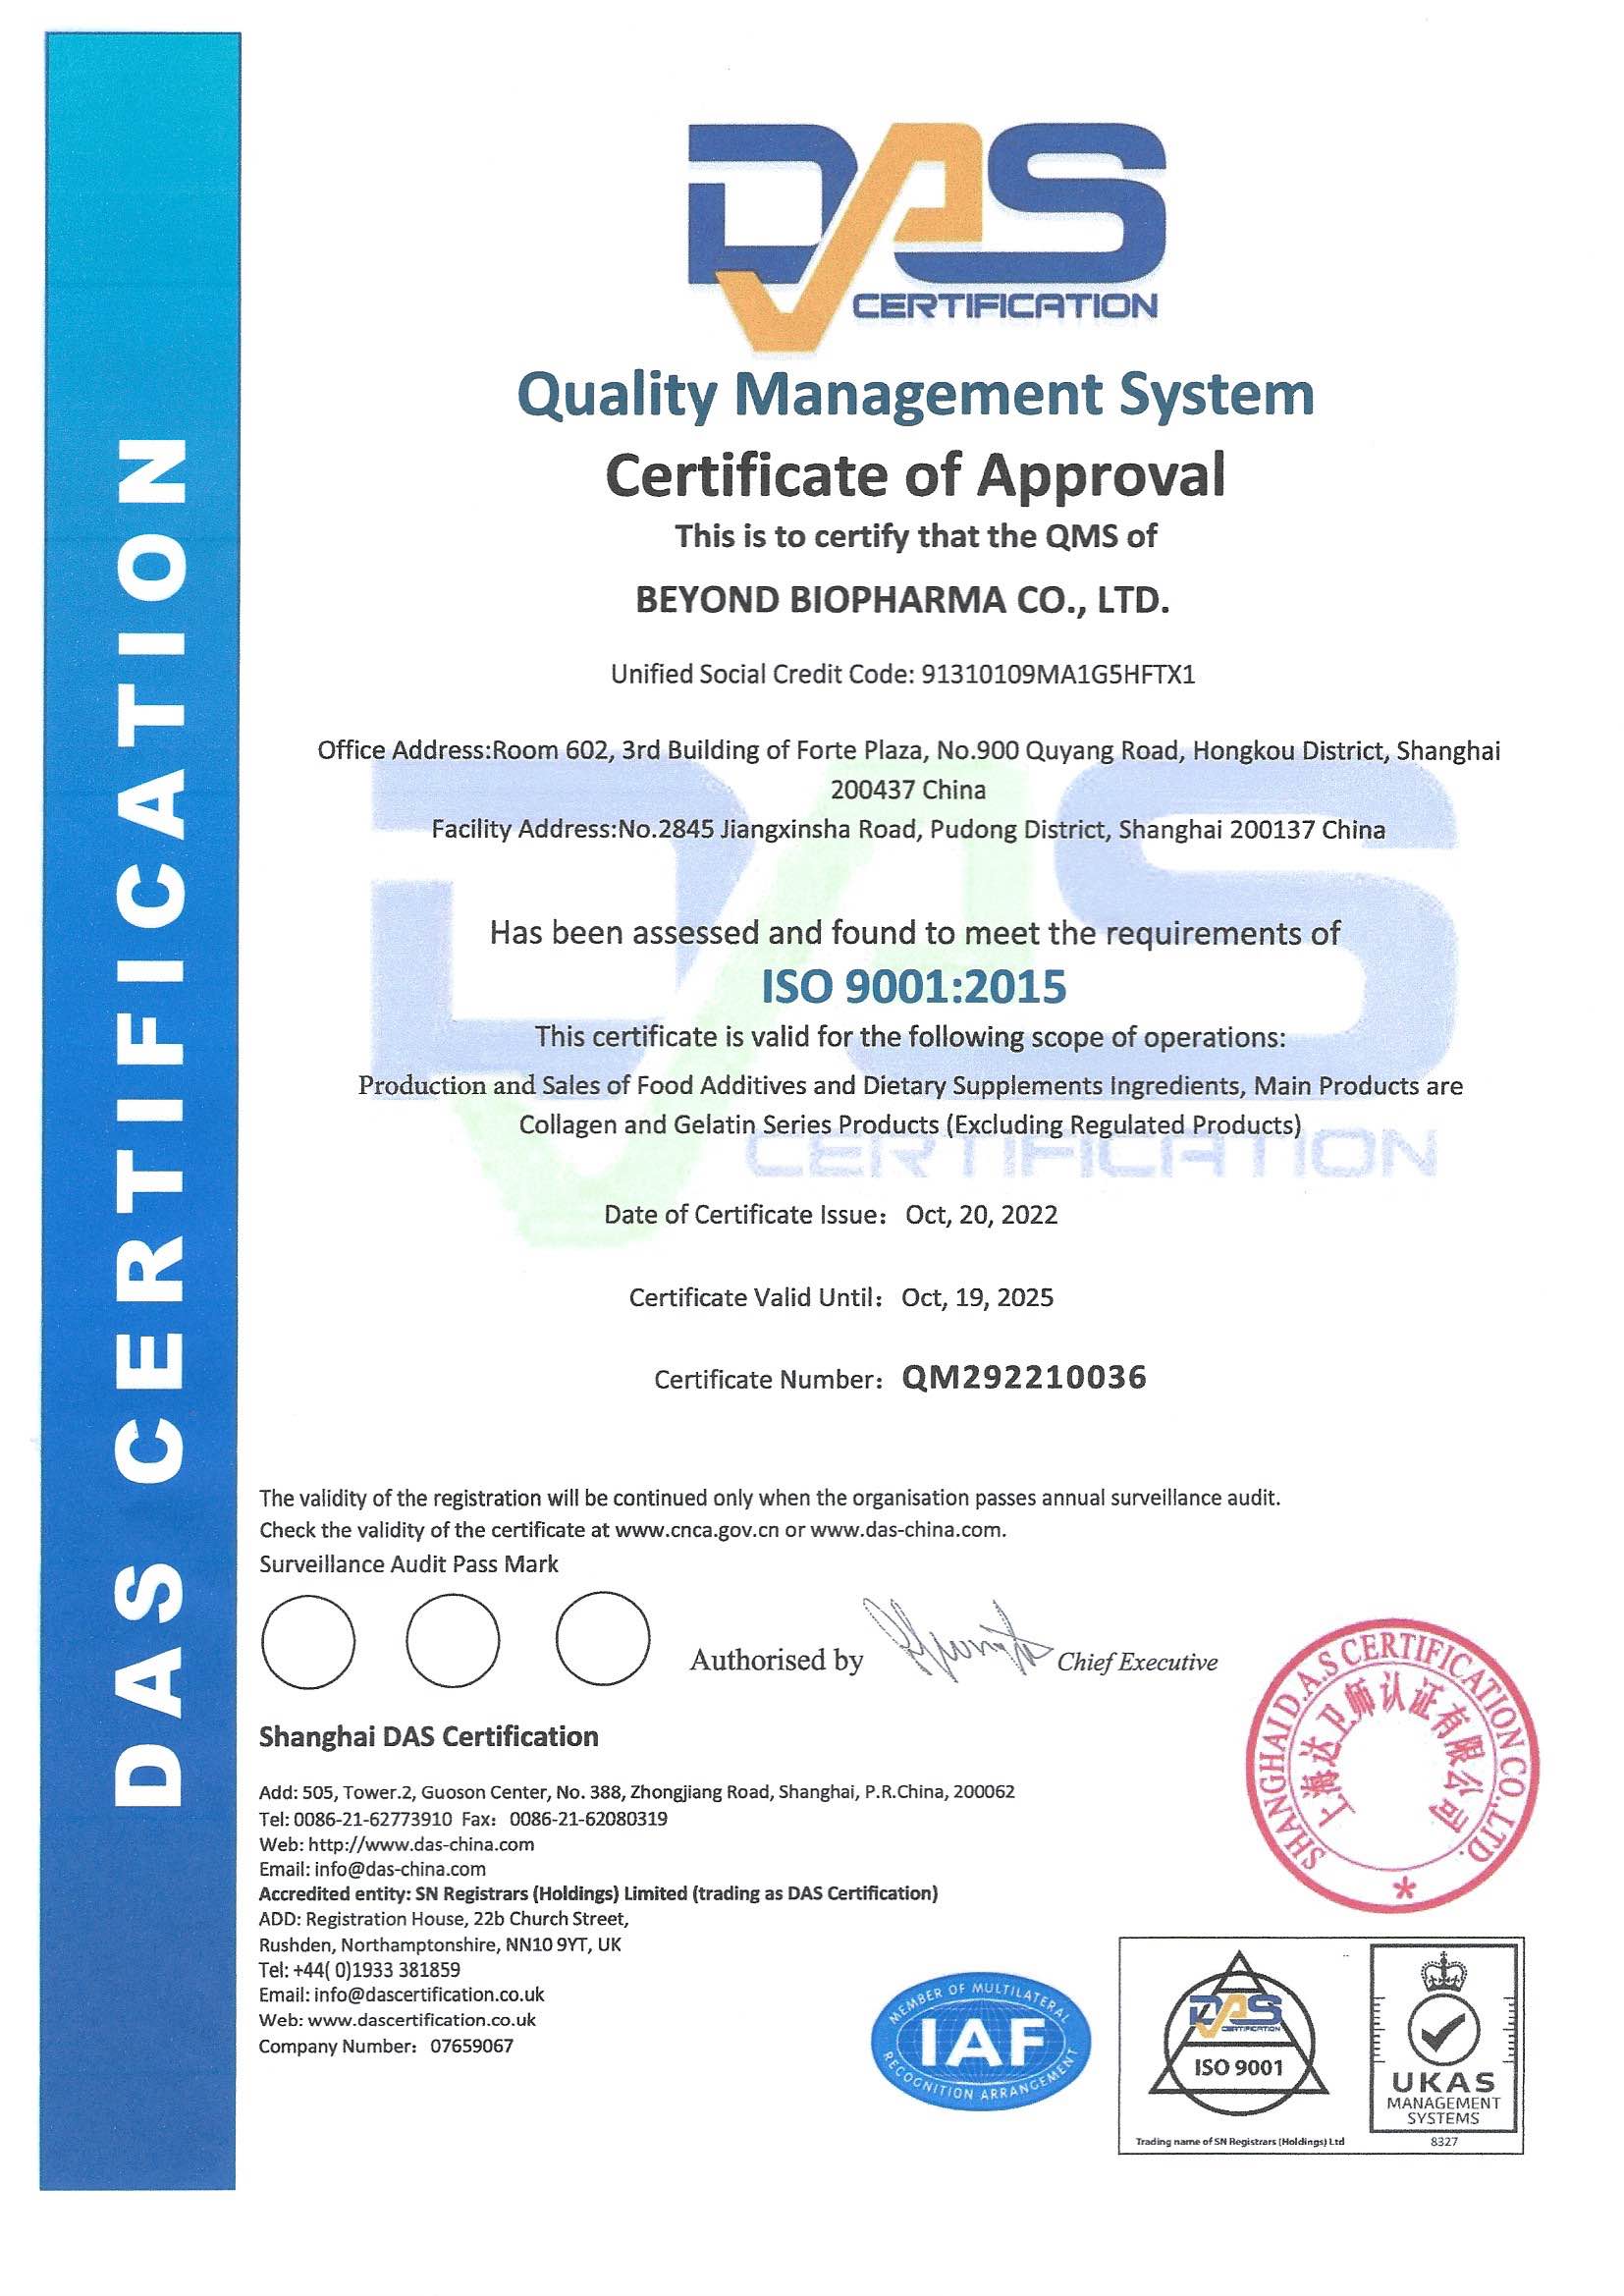 અમારી કંપનીને સફળતાપૂર્વક ISO 9001:2015 ગુણવત્તા વ્યવસ્થાપન સિસ્ટમ પ્રમાણપત્ર અપગ્રેડ કરવા બદલ અભિનંદન...